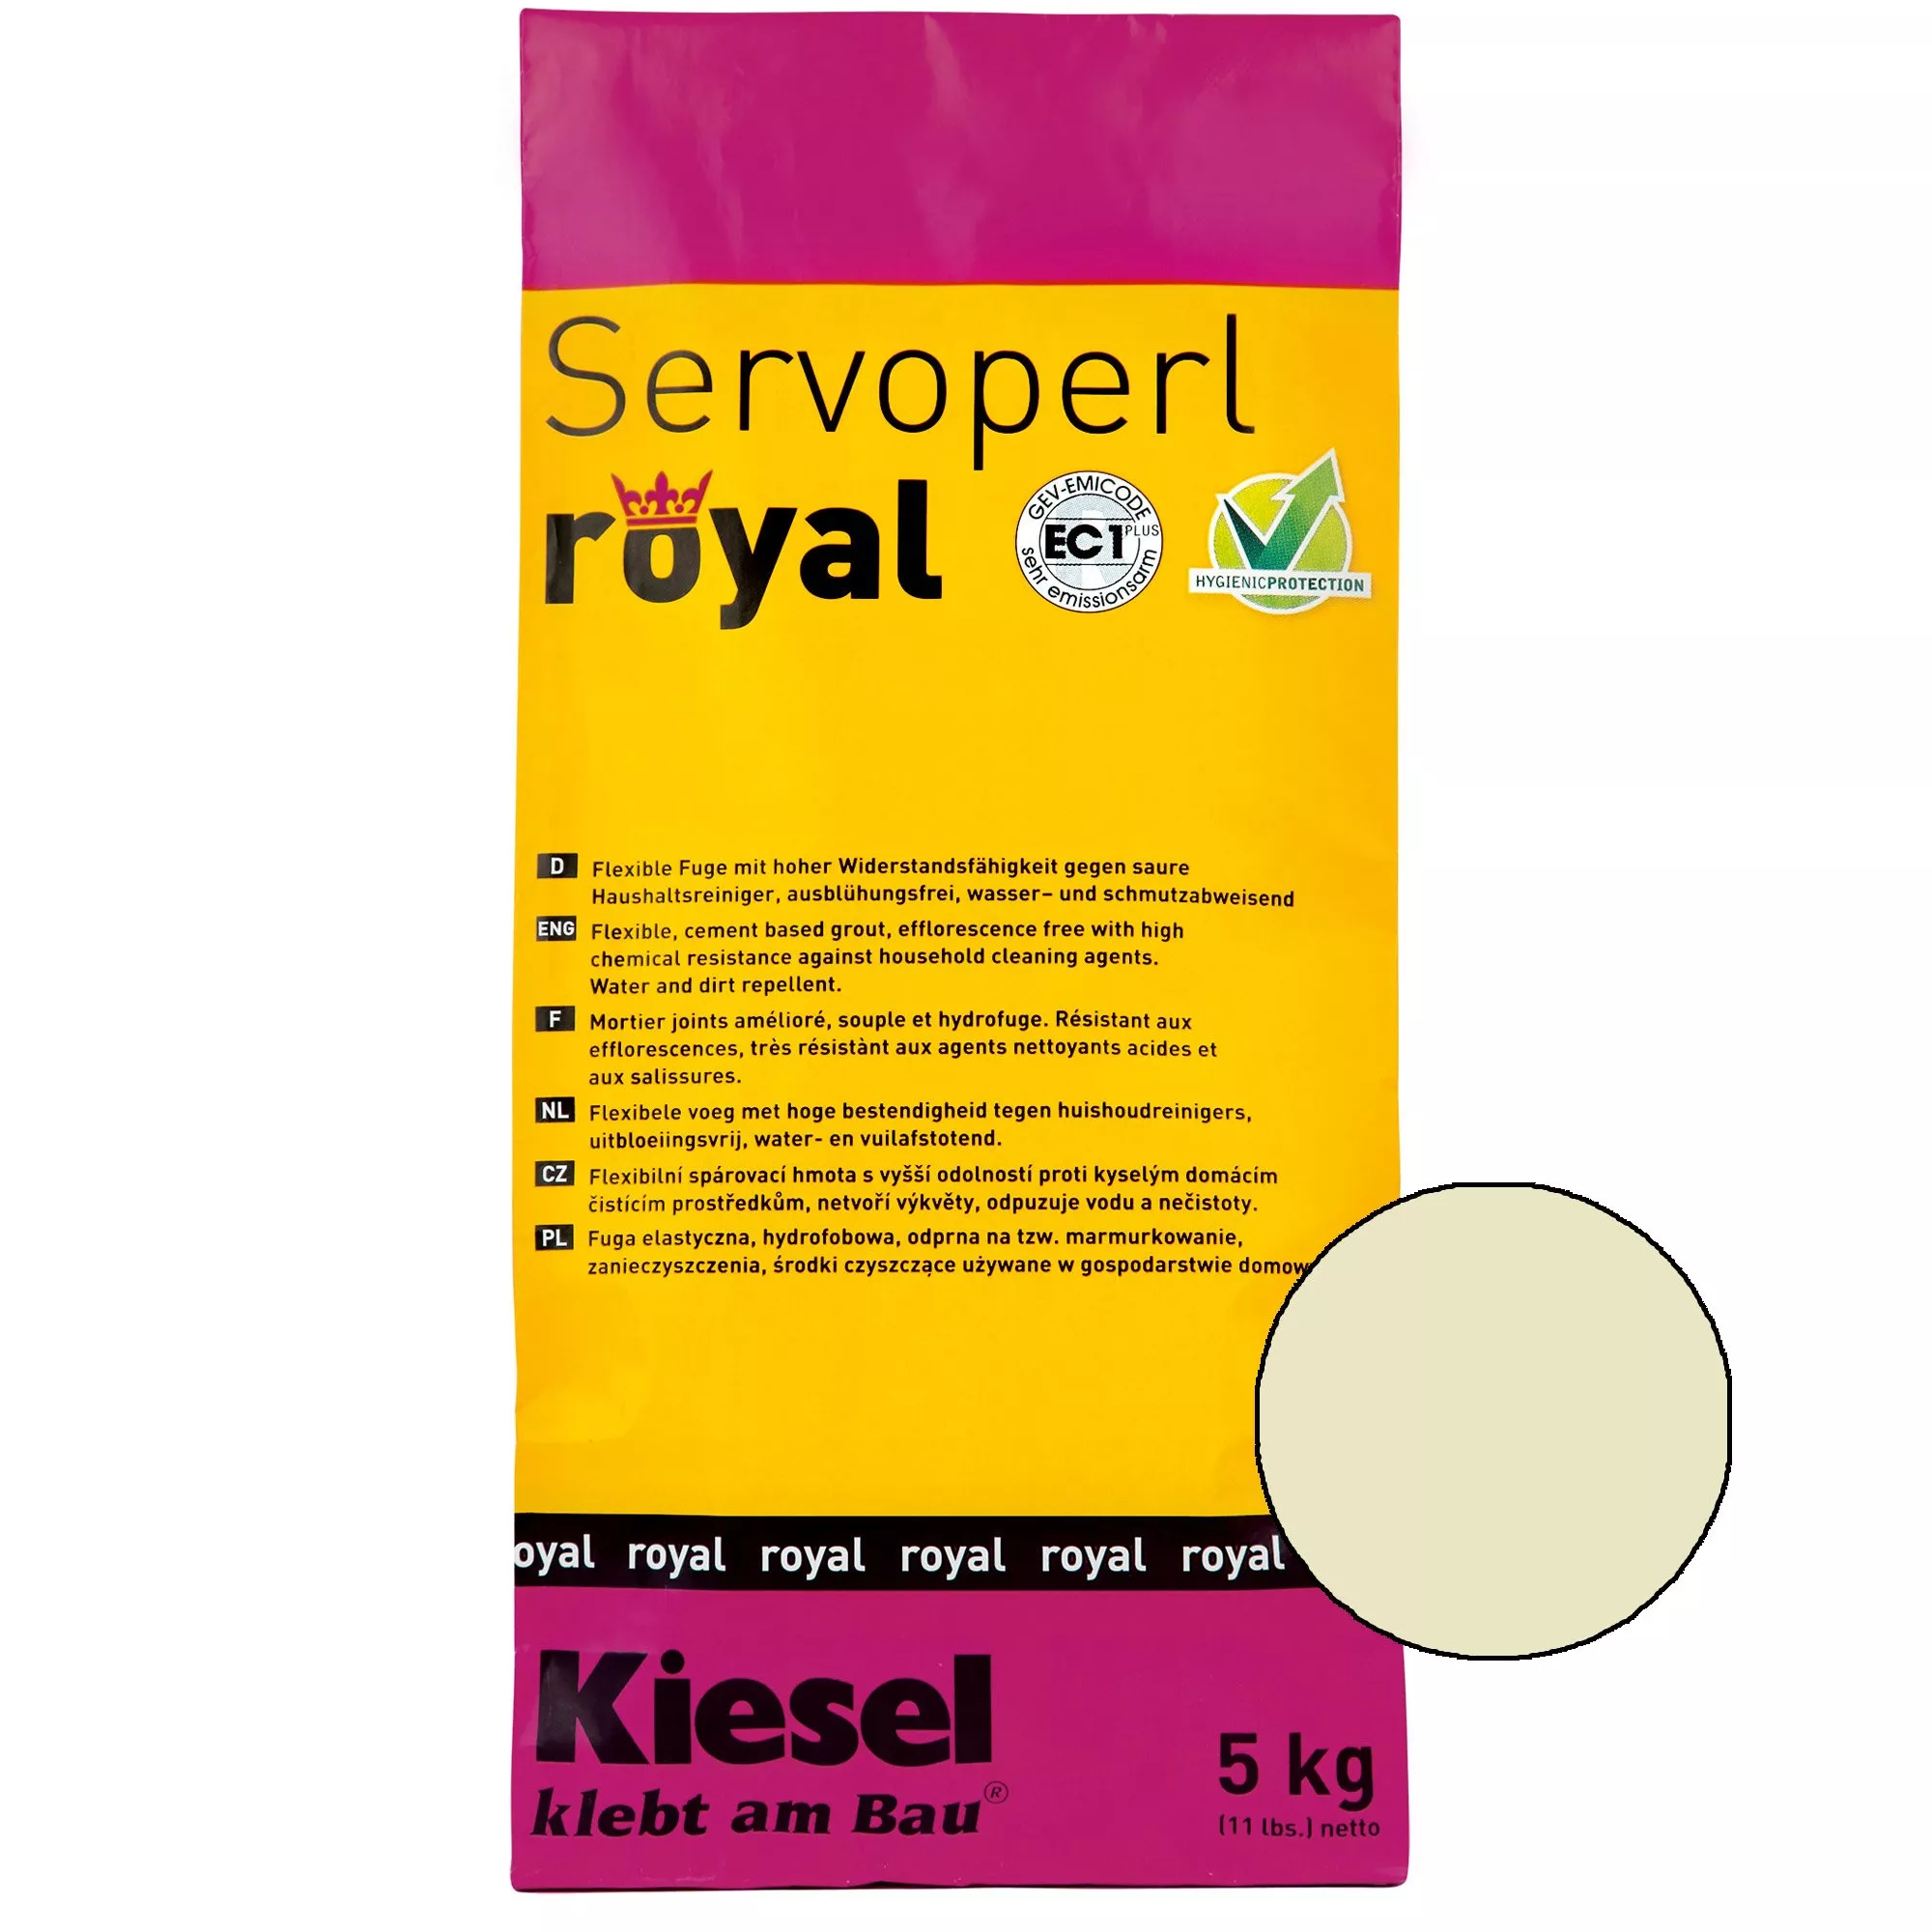 Kiesel Servoperl royal - смес за фуги-5кг жасмин